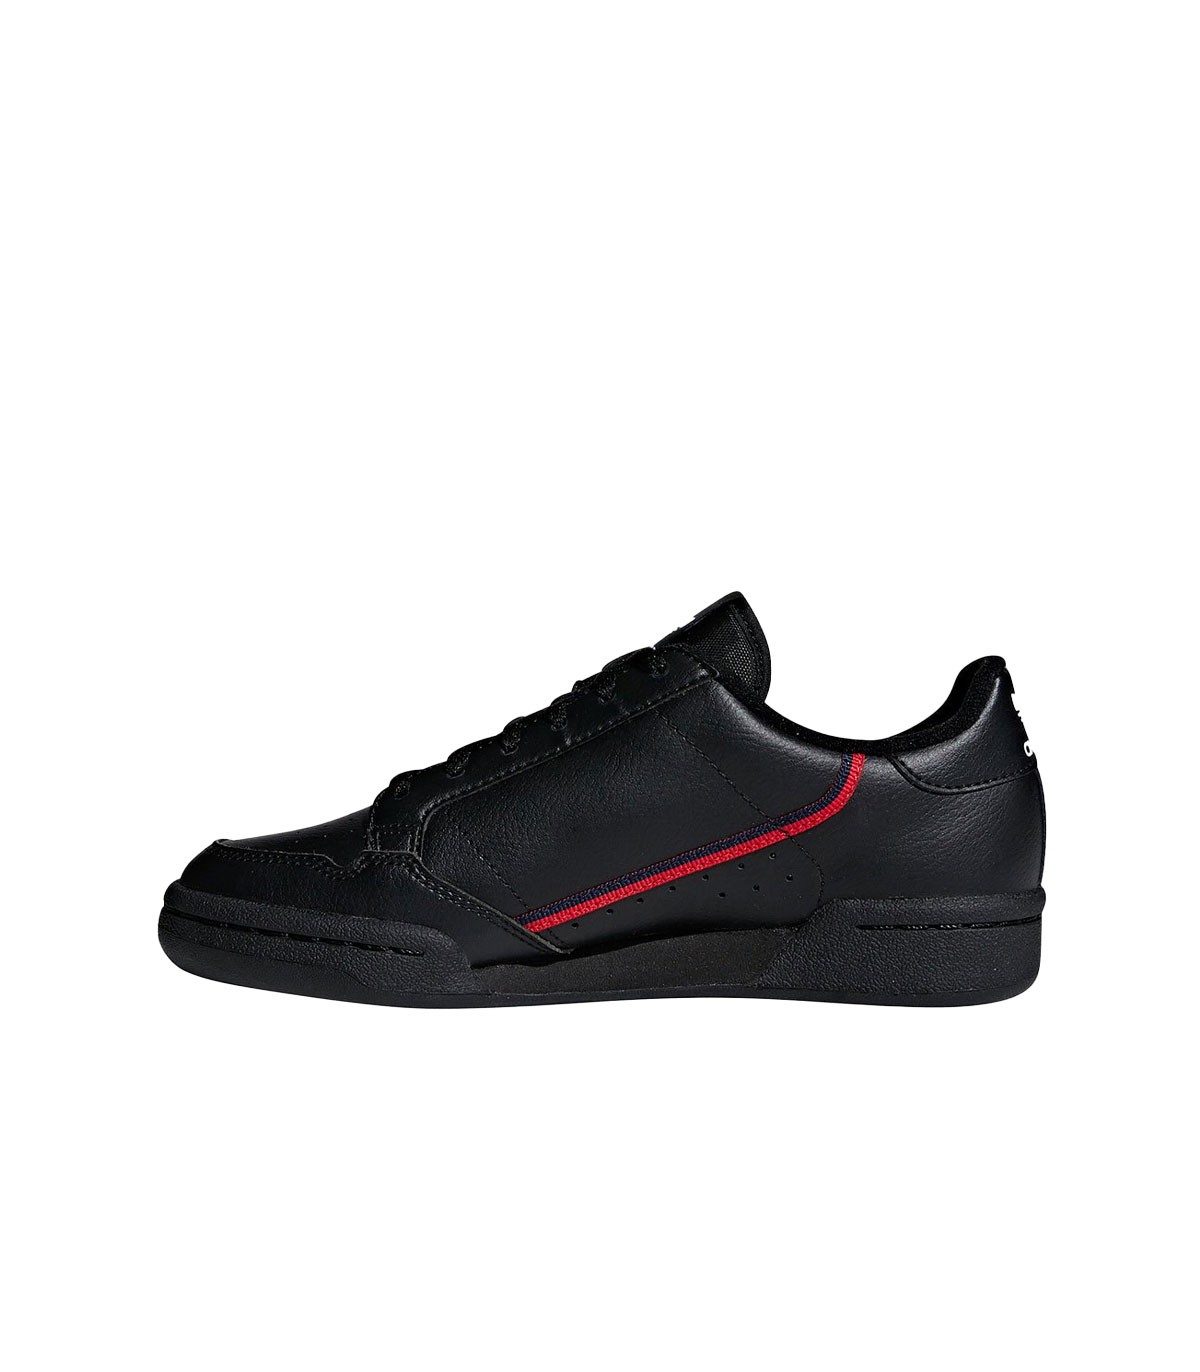 Adidas - Zapatillas Continental 80 - Negro